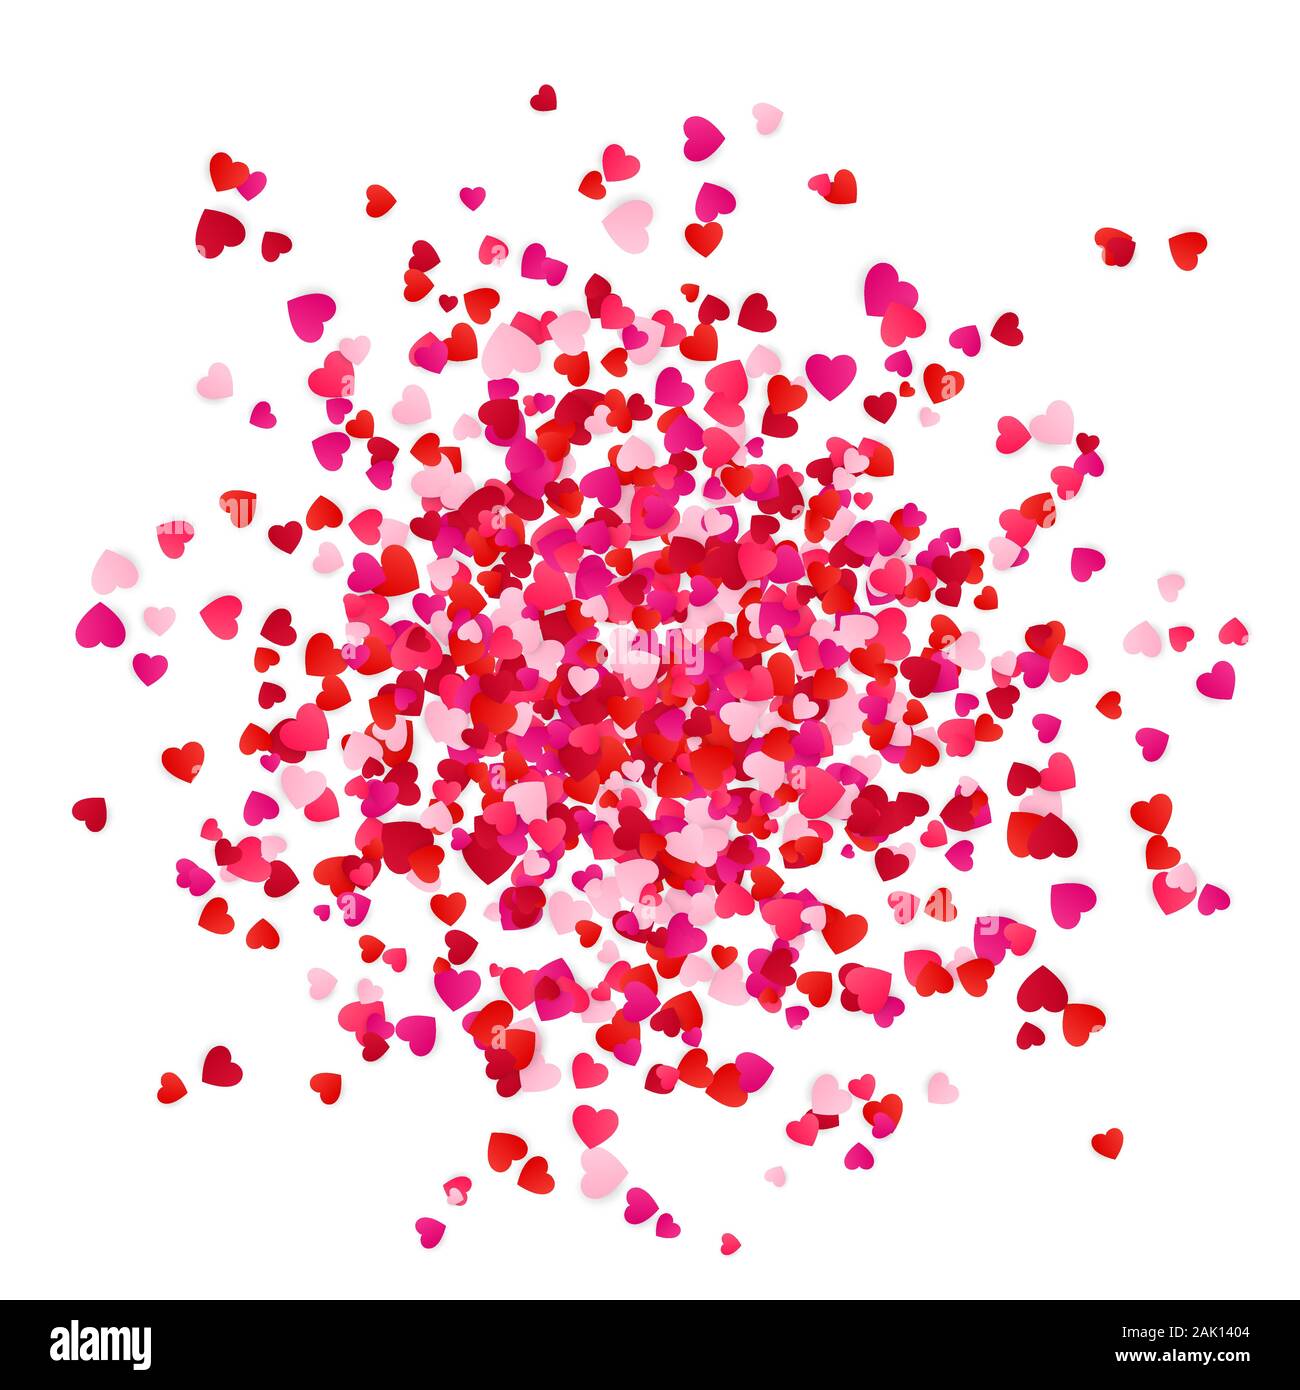 Rot Rosa und Rose scatter Papier Herzen Konfetti. Urlaub Dekoration Element. Vector Illustration auf weißem Hintergrund Stock Vektor